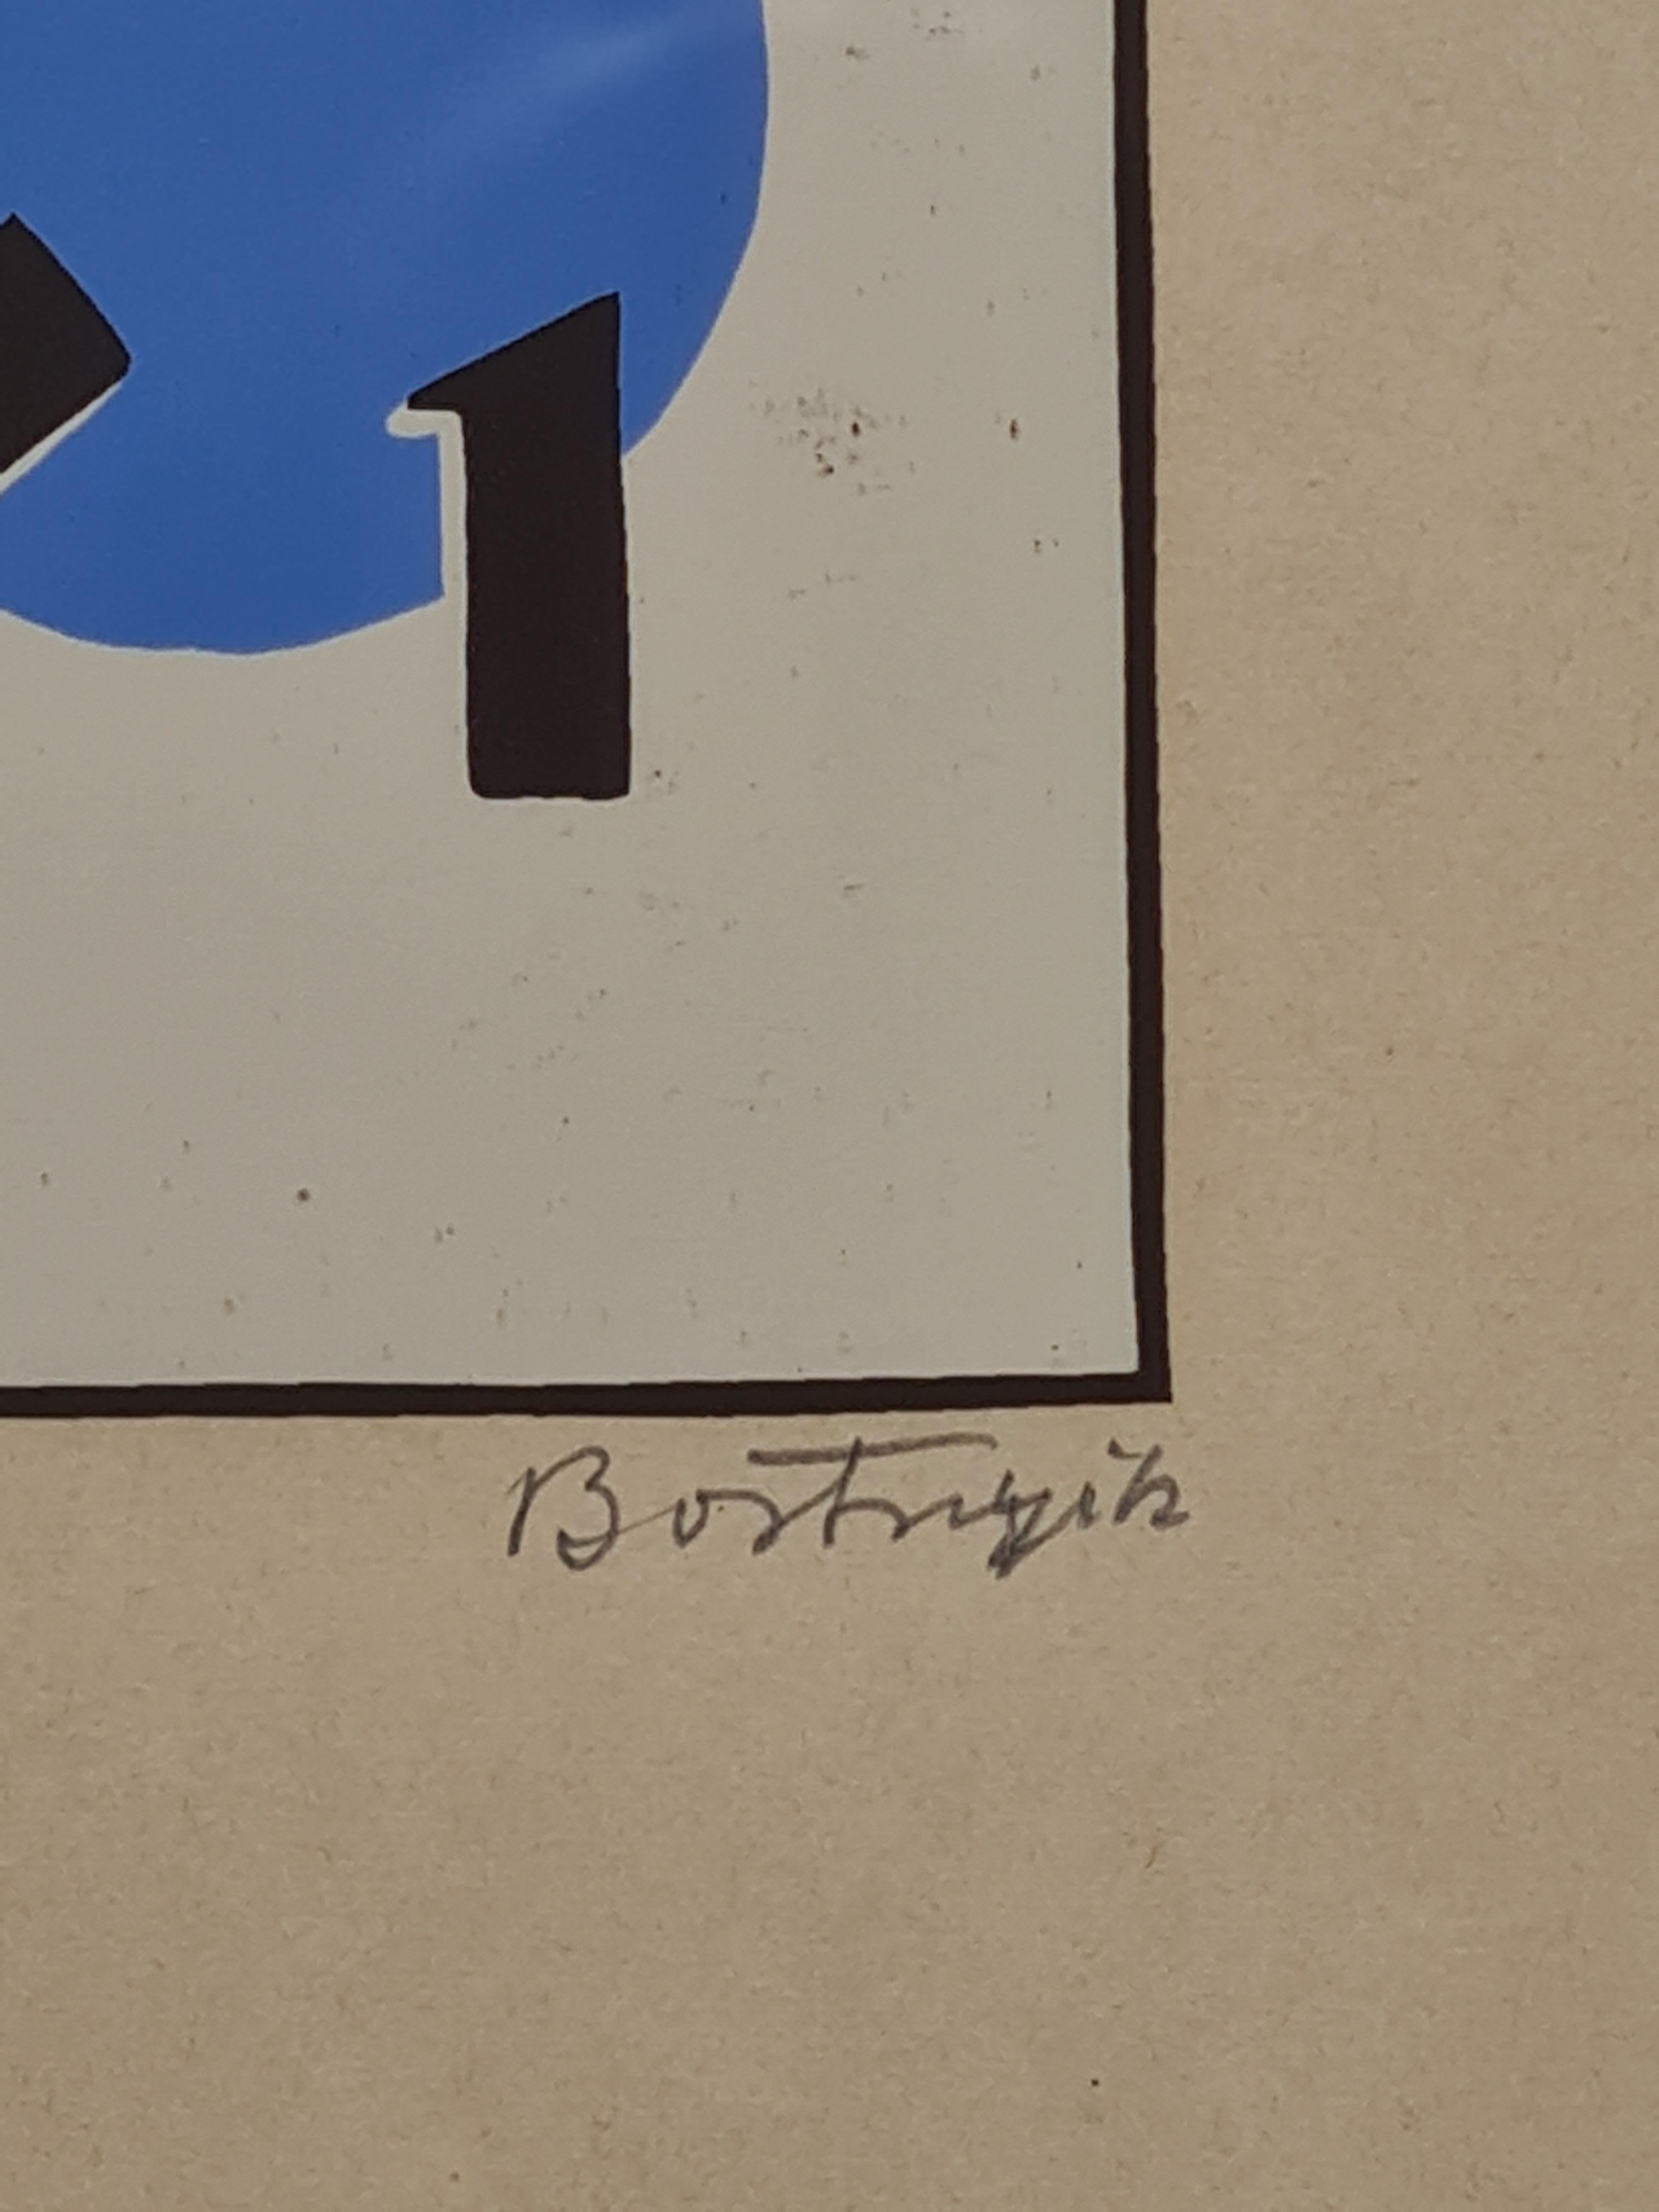 Konstruktivistisches abstraktes Album aus dem Album MA 1921 (Konstruktivismus), Print, von Sandor Bortnyik